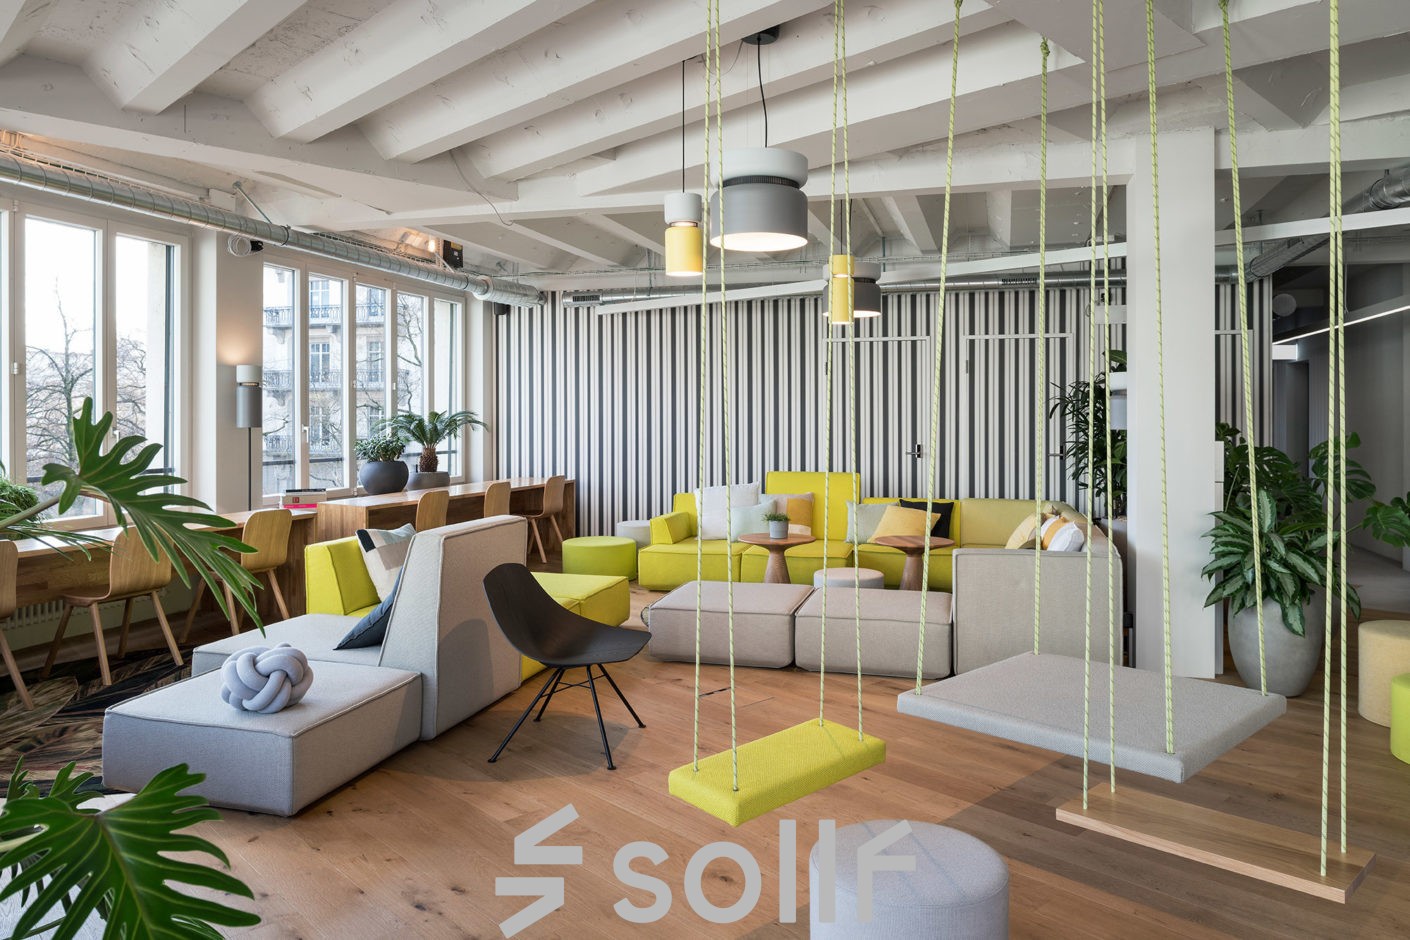 Modern gestalteter Lounge-Bereich im Büro in Talacker 41, Zürich City, mit bequemen Sitzmöglichkeiten und Pflanzen.